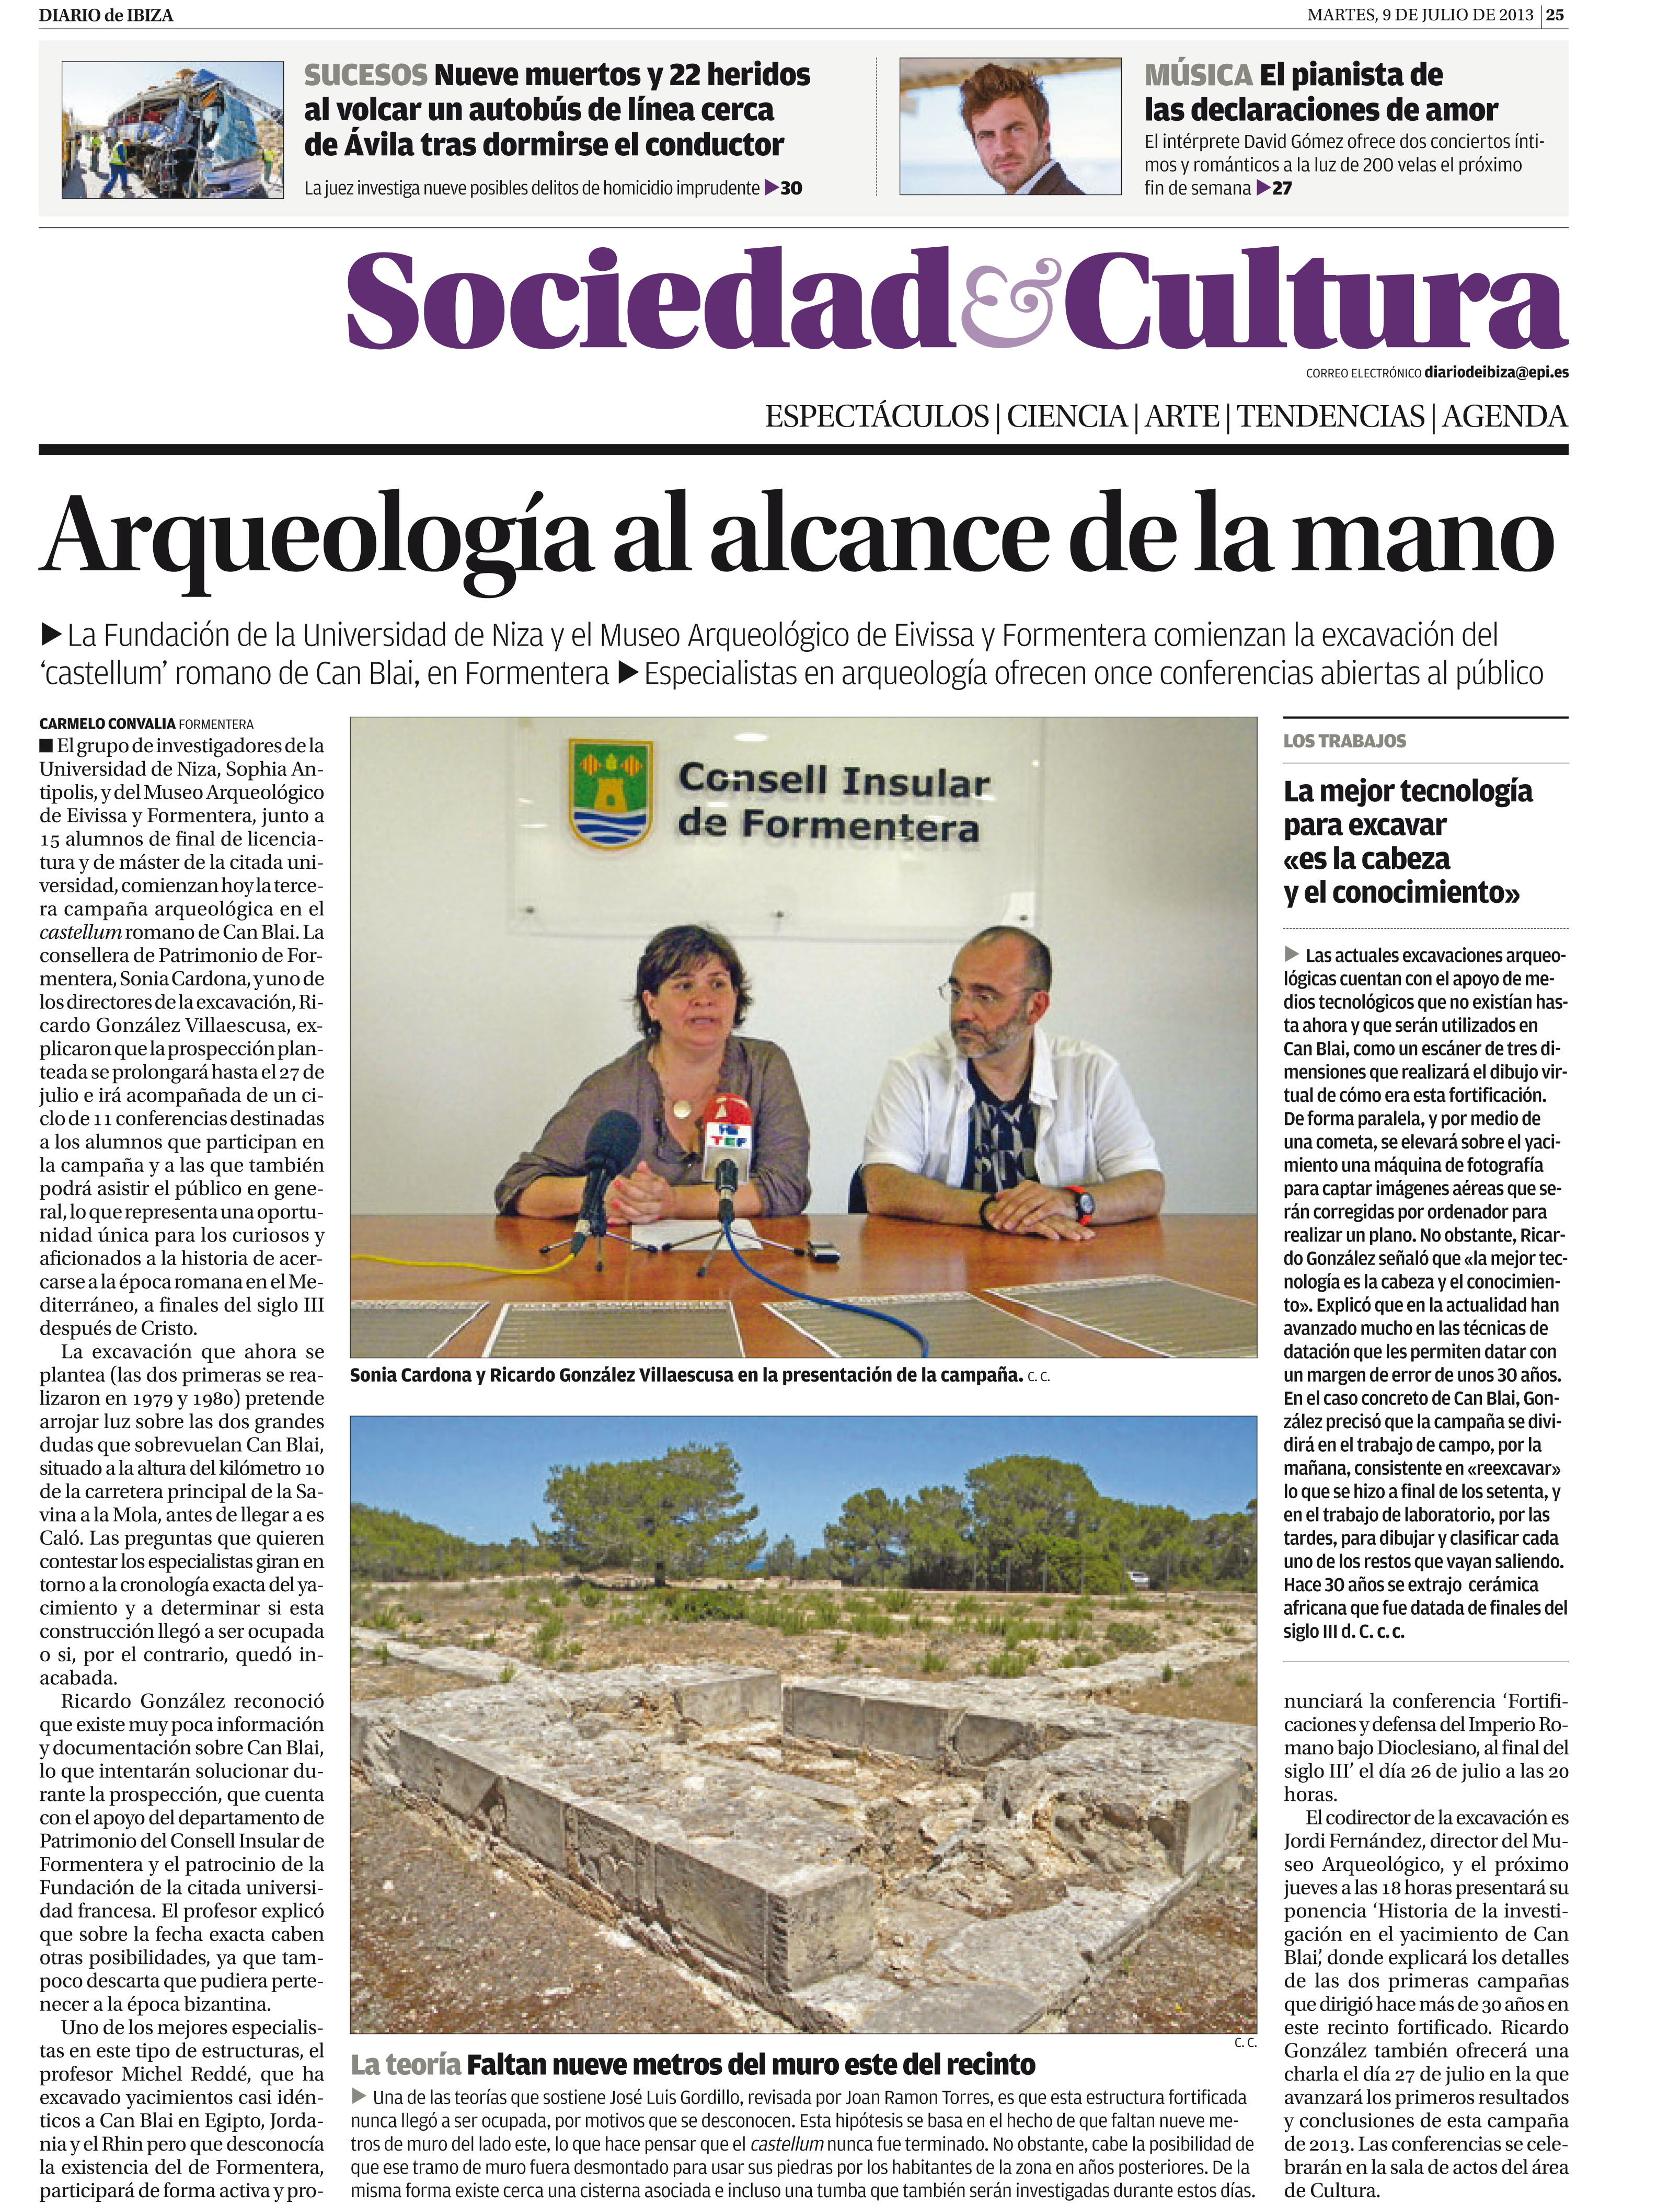 Arqueología al alcance de la mano, Diario de Ibiza, 9 de julio de 2013